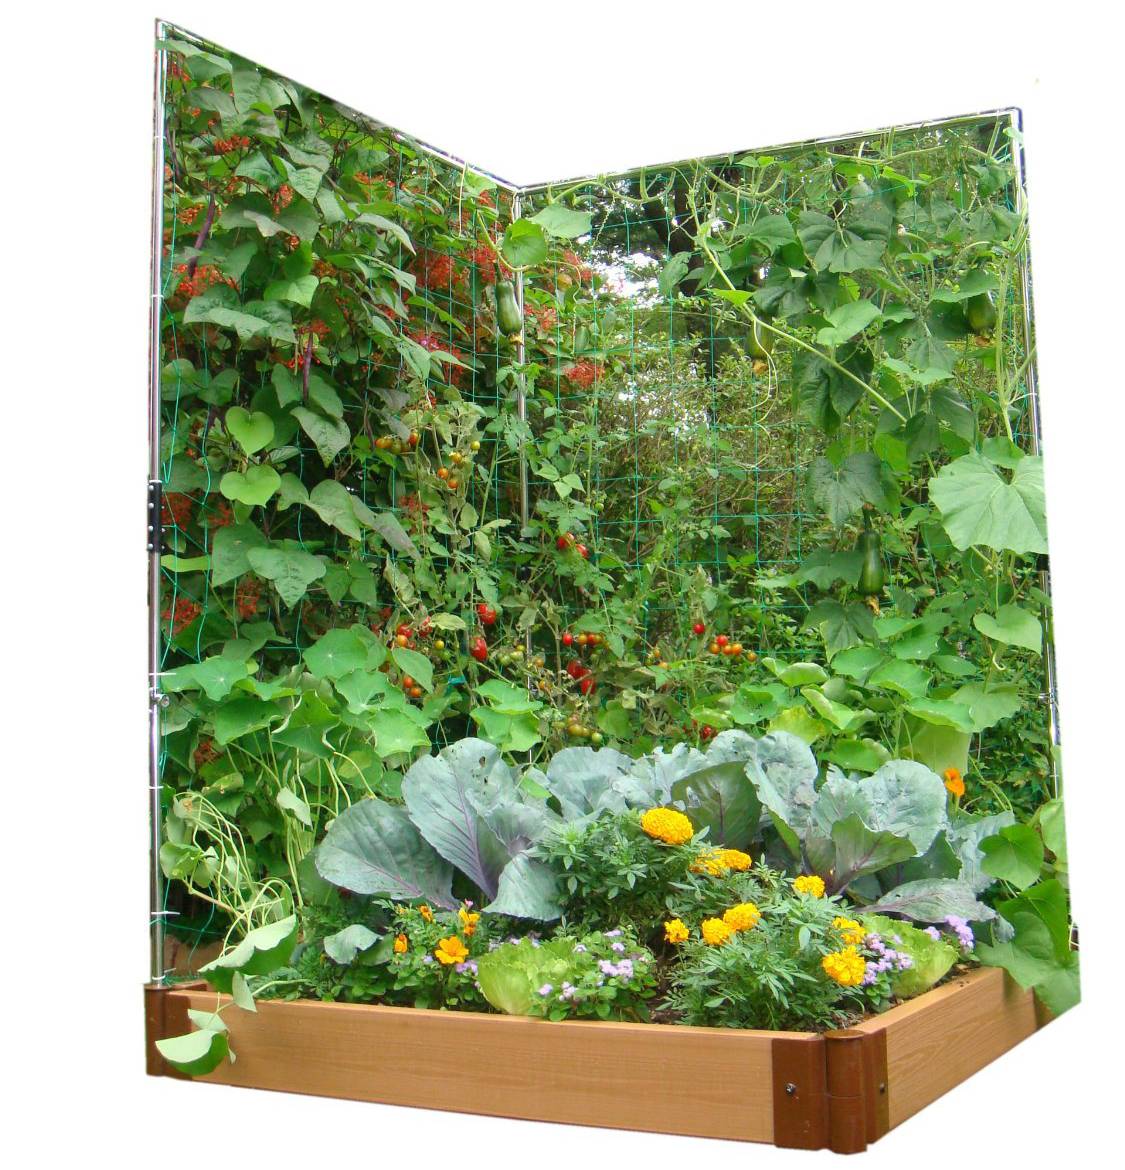 Creative Vegetable Garden Ideas